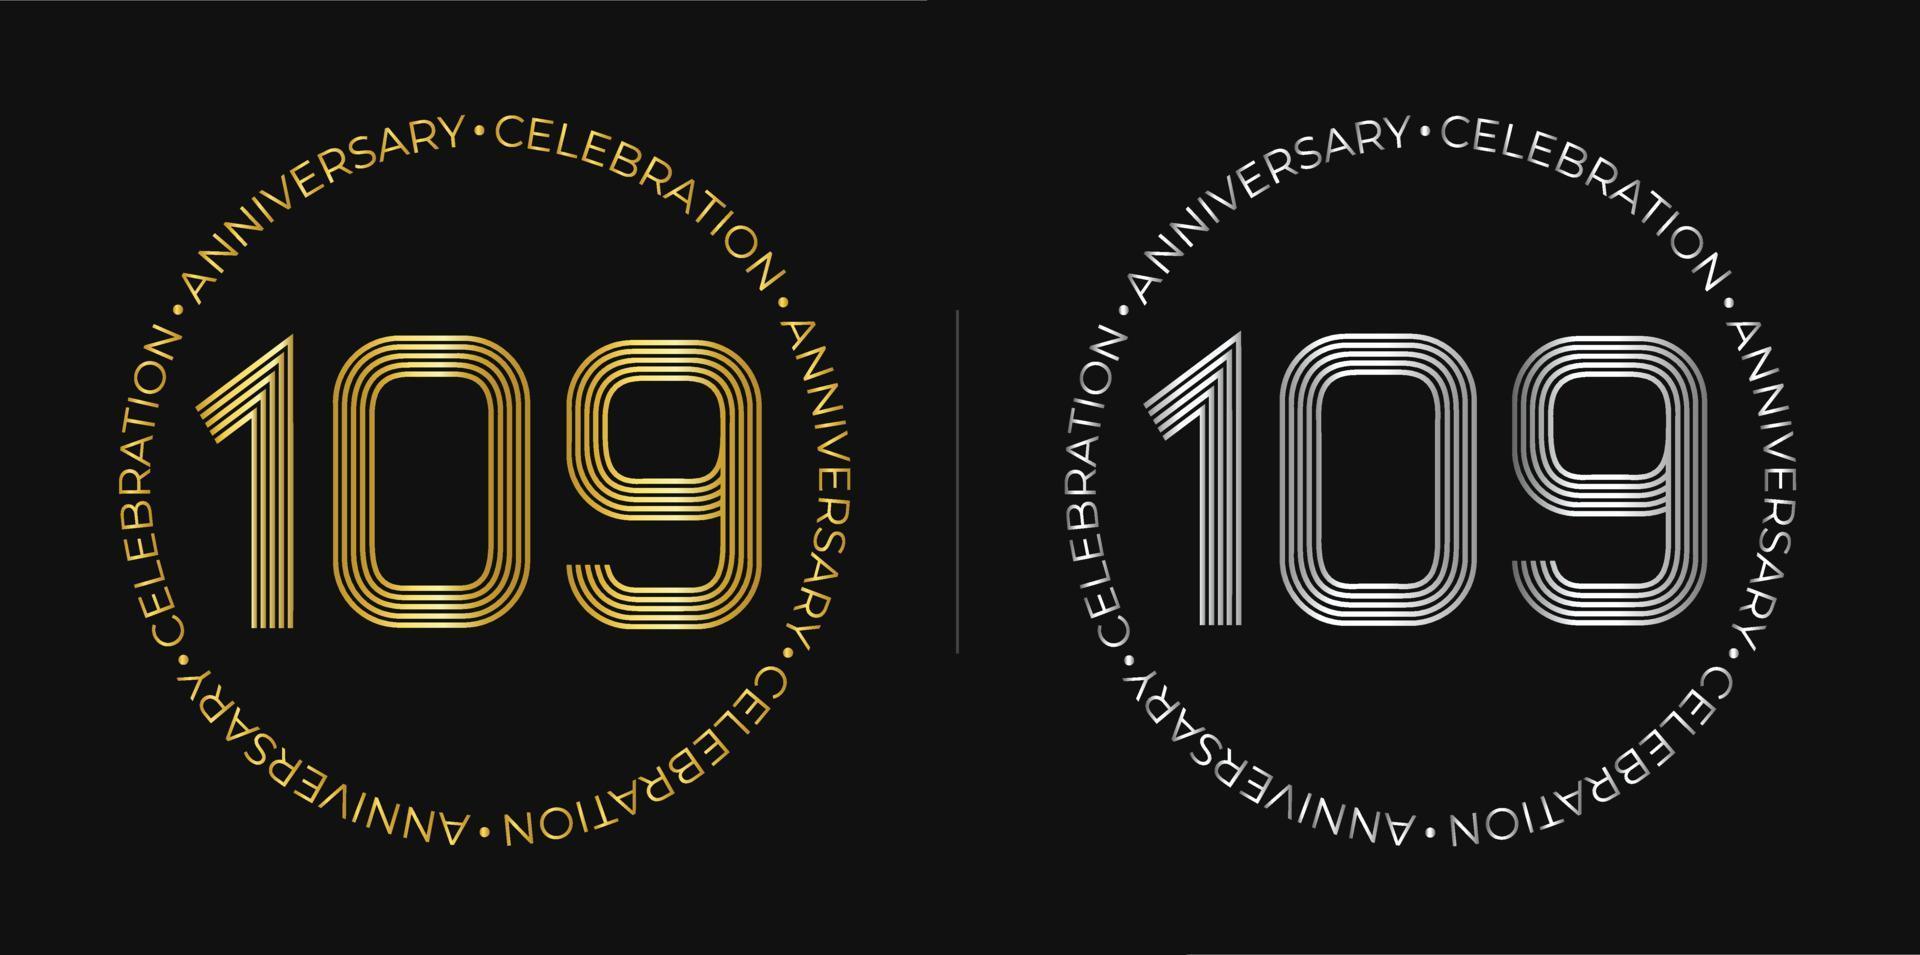 109e anniversaire. bannière de célébration d'anniversaire de cent neuf ans aux couleurs dorées et argentées. logo circulaire avec un design original de chiffres aux lignes élégantes. vecteur